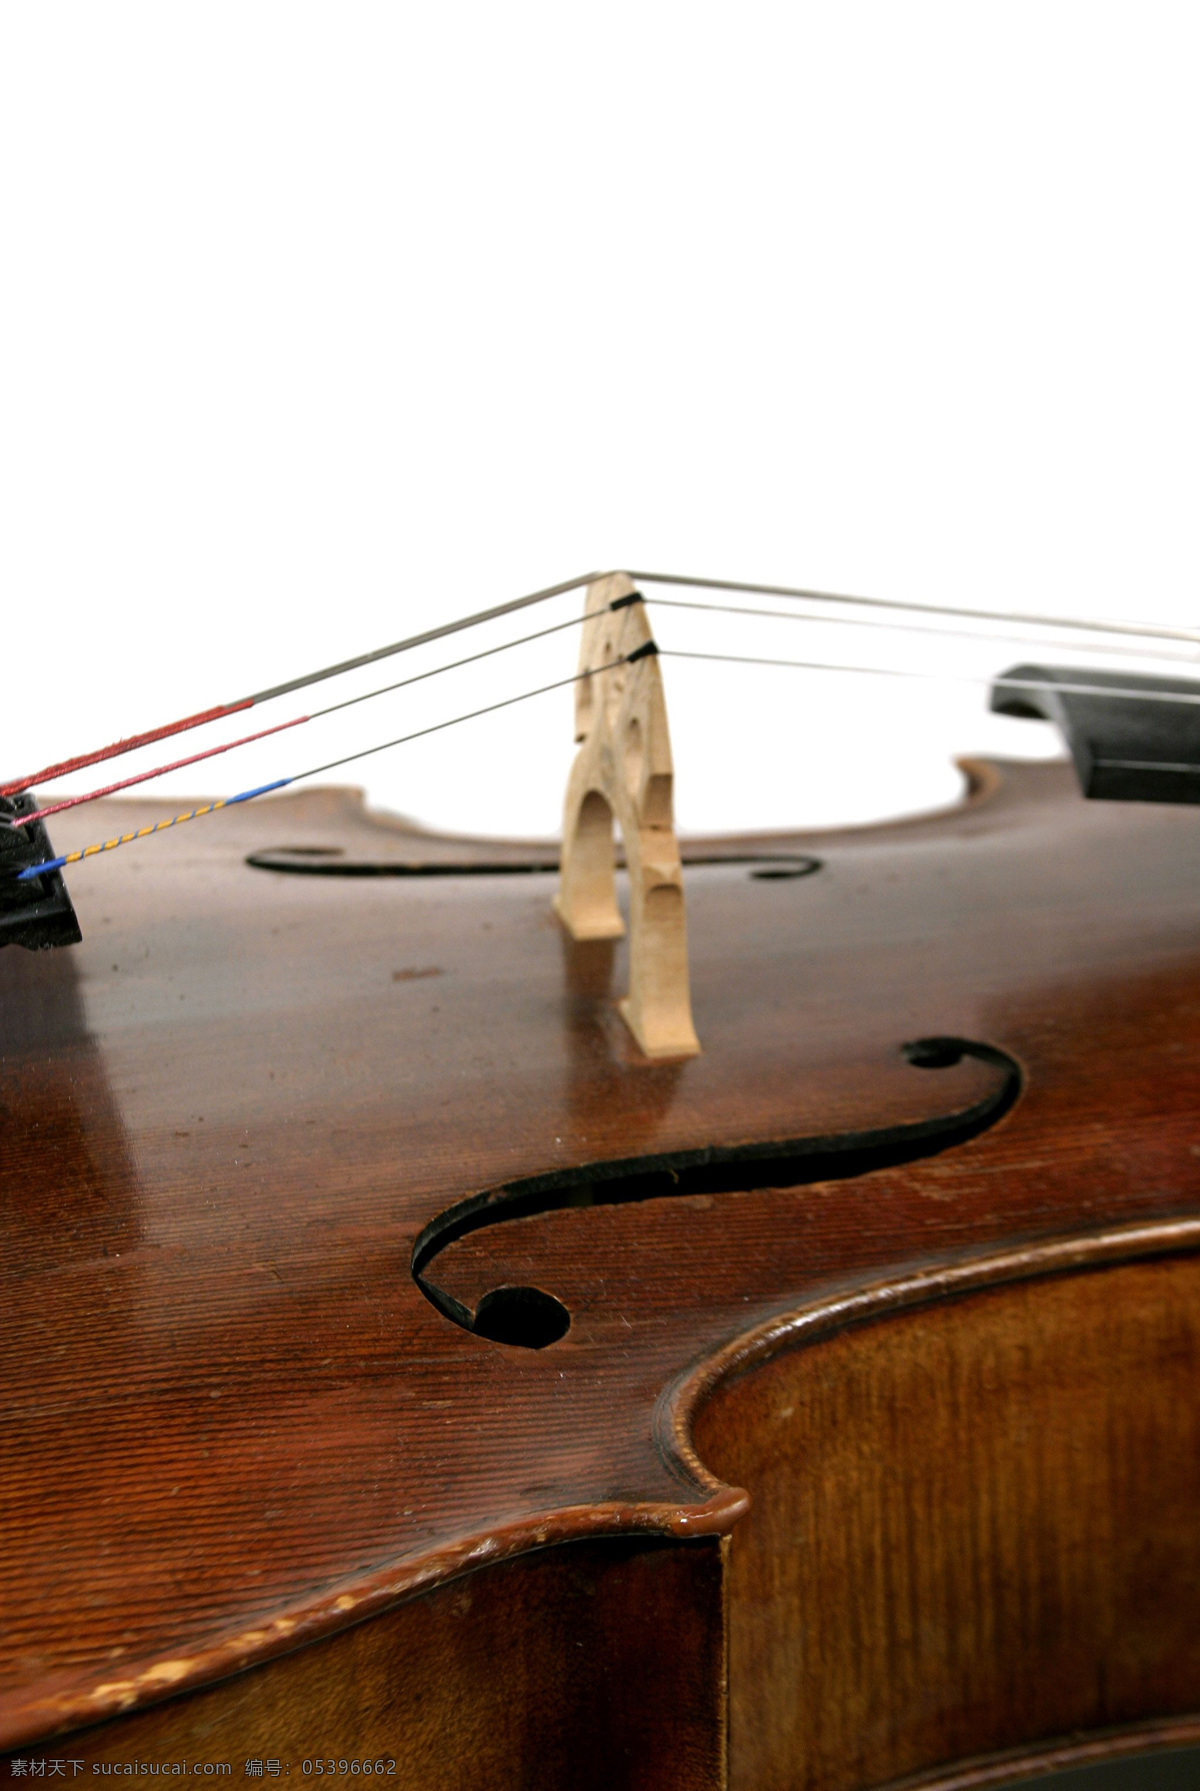 琴弦特写 音乐 艺术 乐器 弦乐器 小提琴 文化艺术 舞蹈音乐 摄影图库